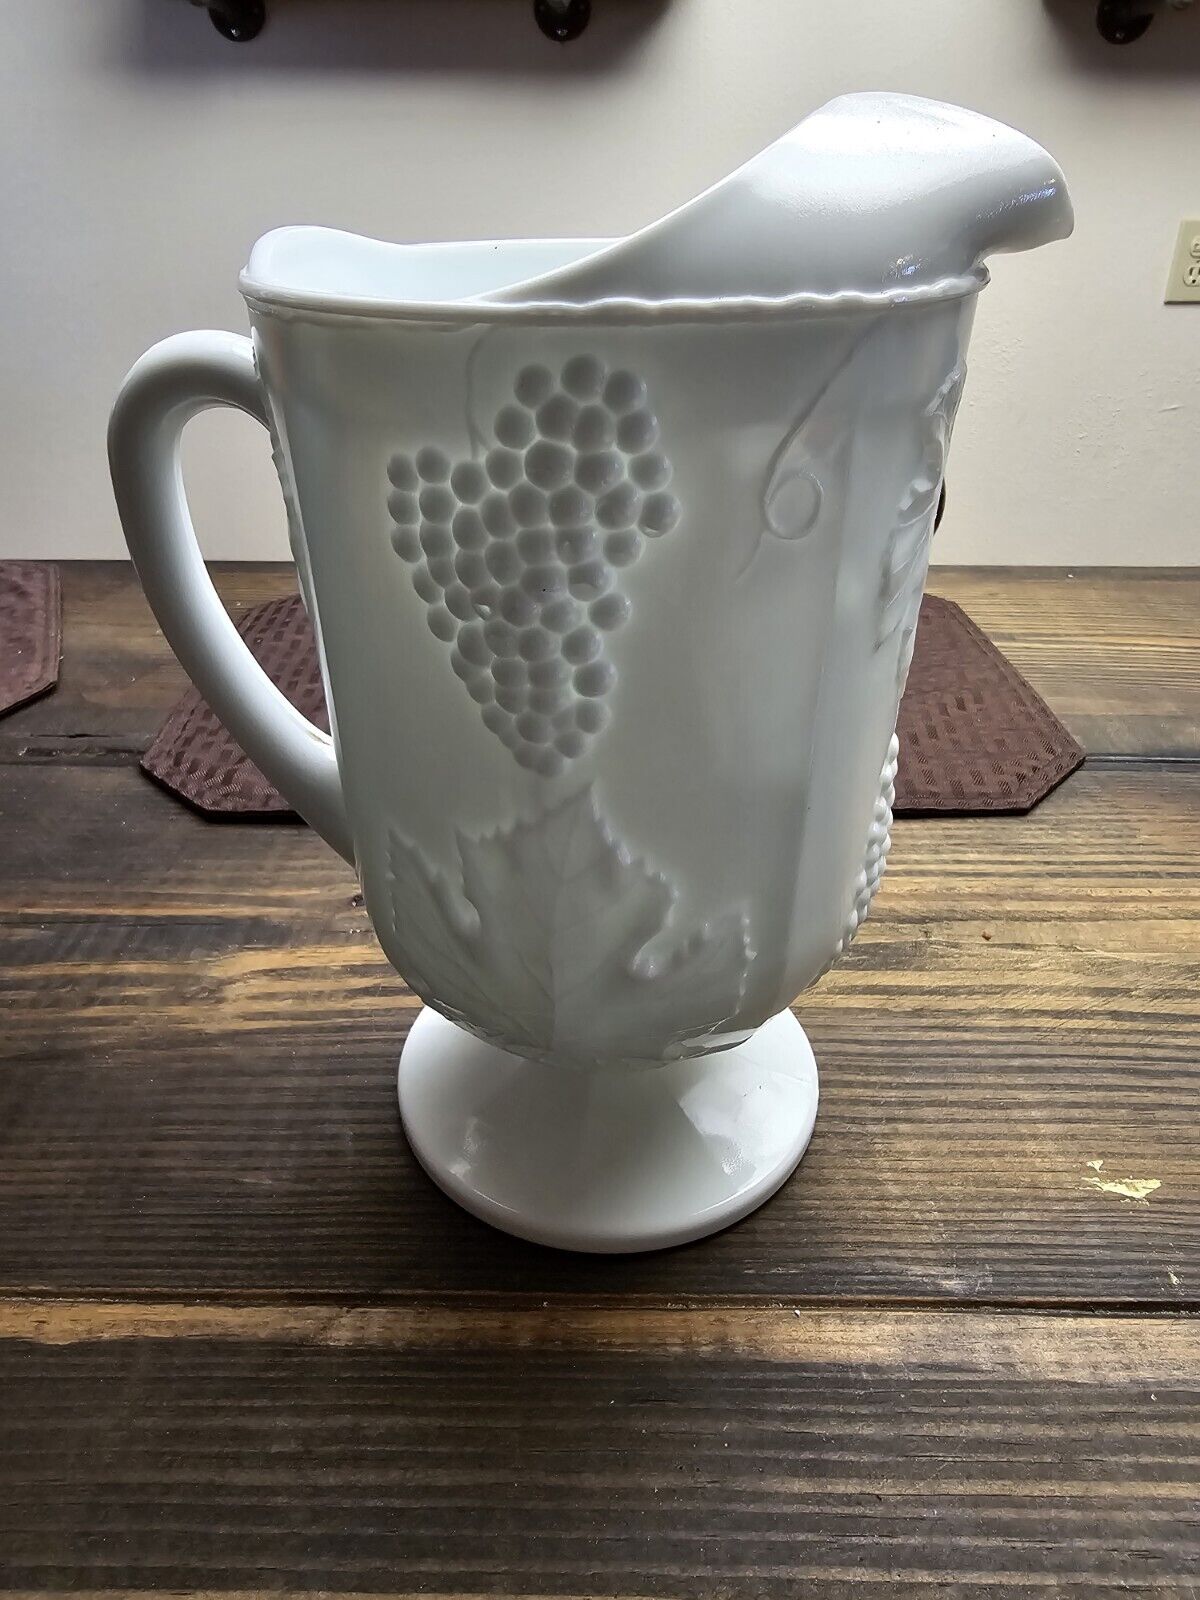 Vintage milk glass beverage pitcher . No chips or cracks.